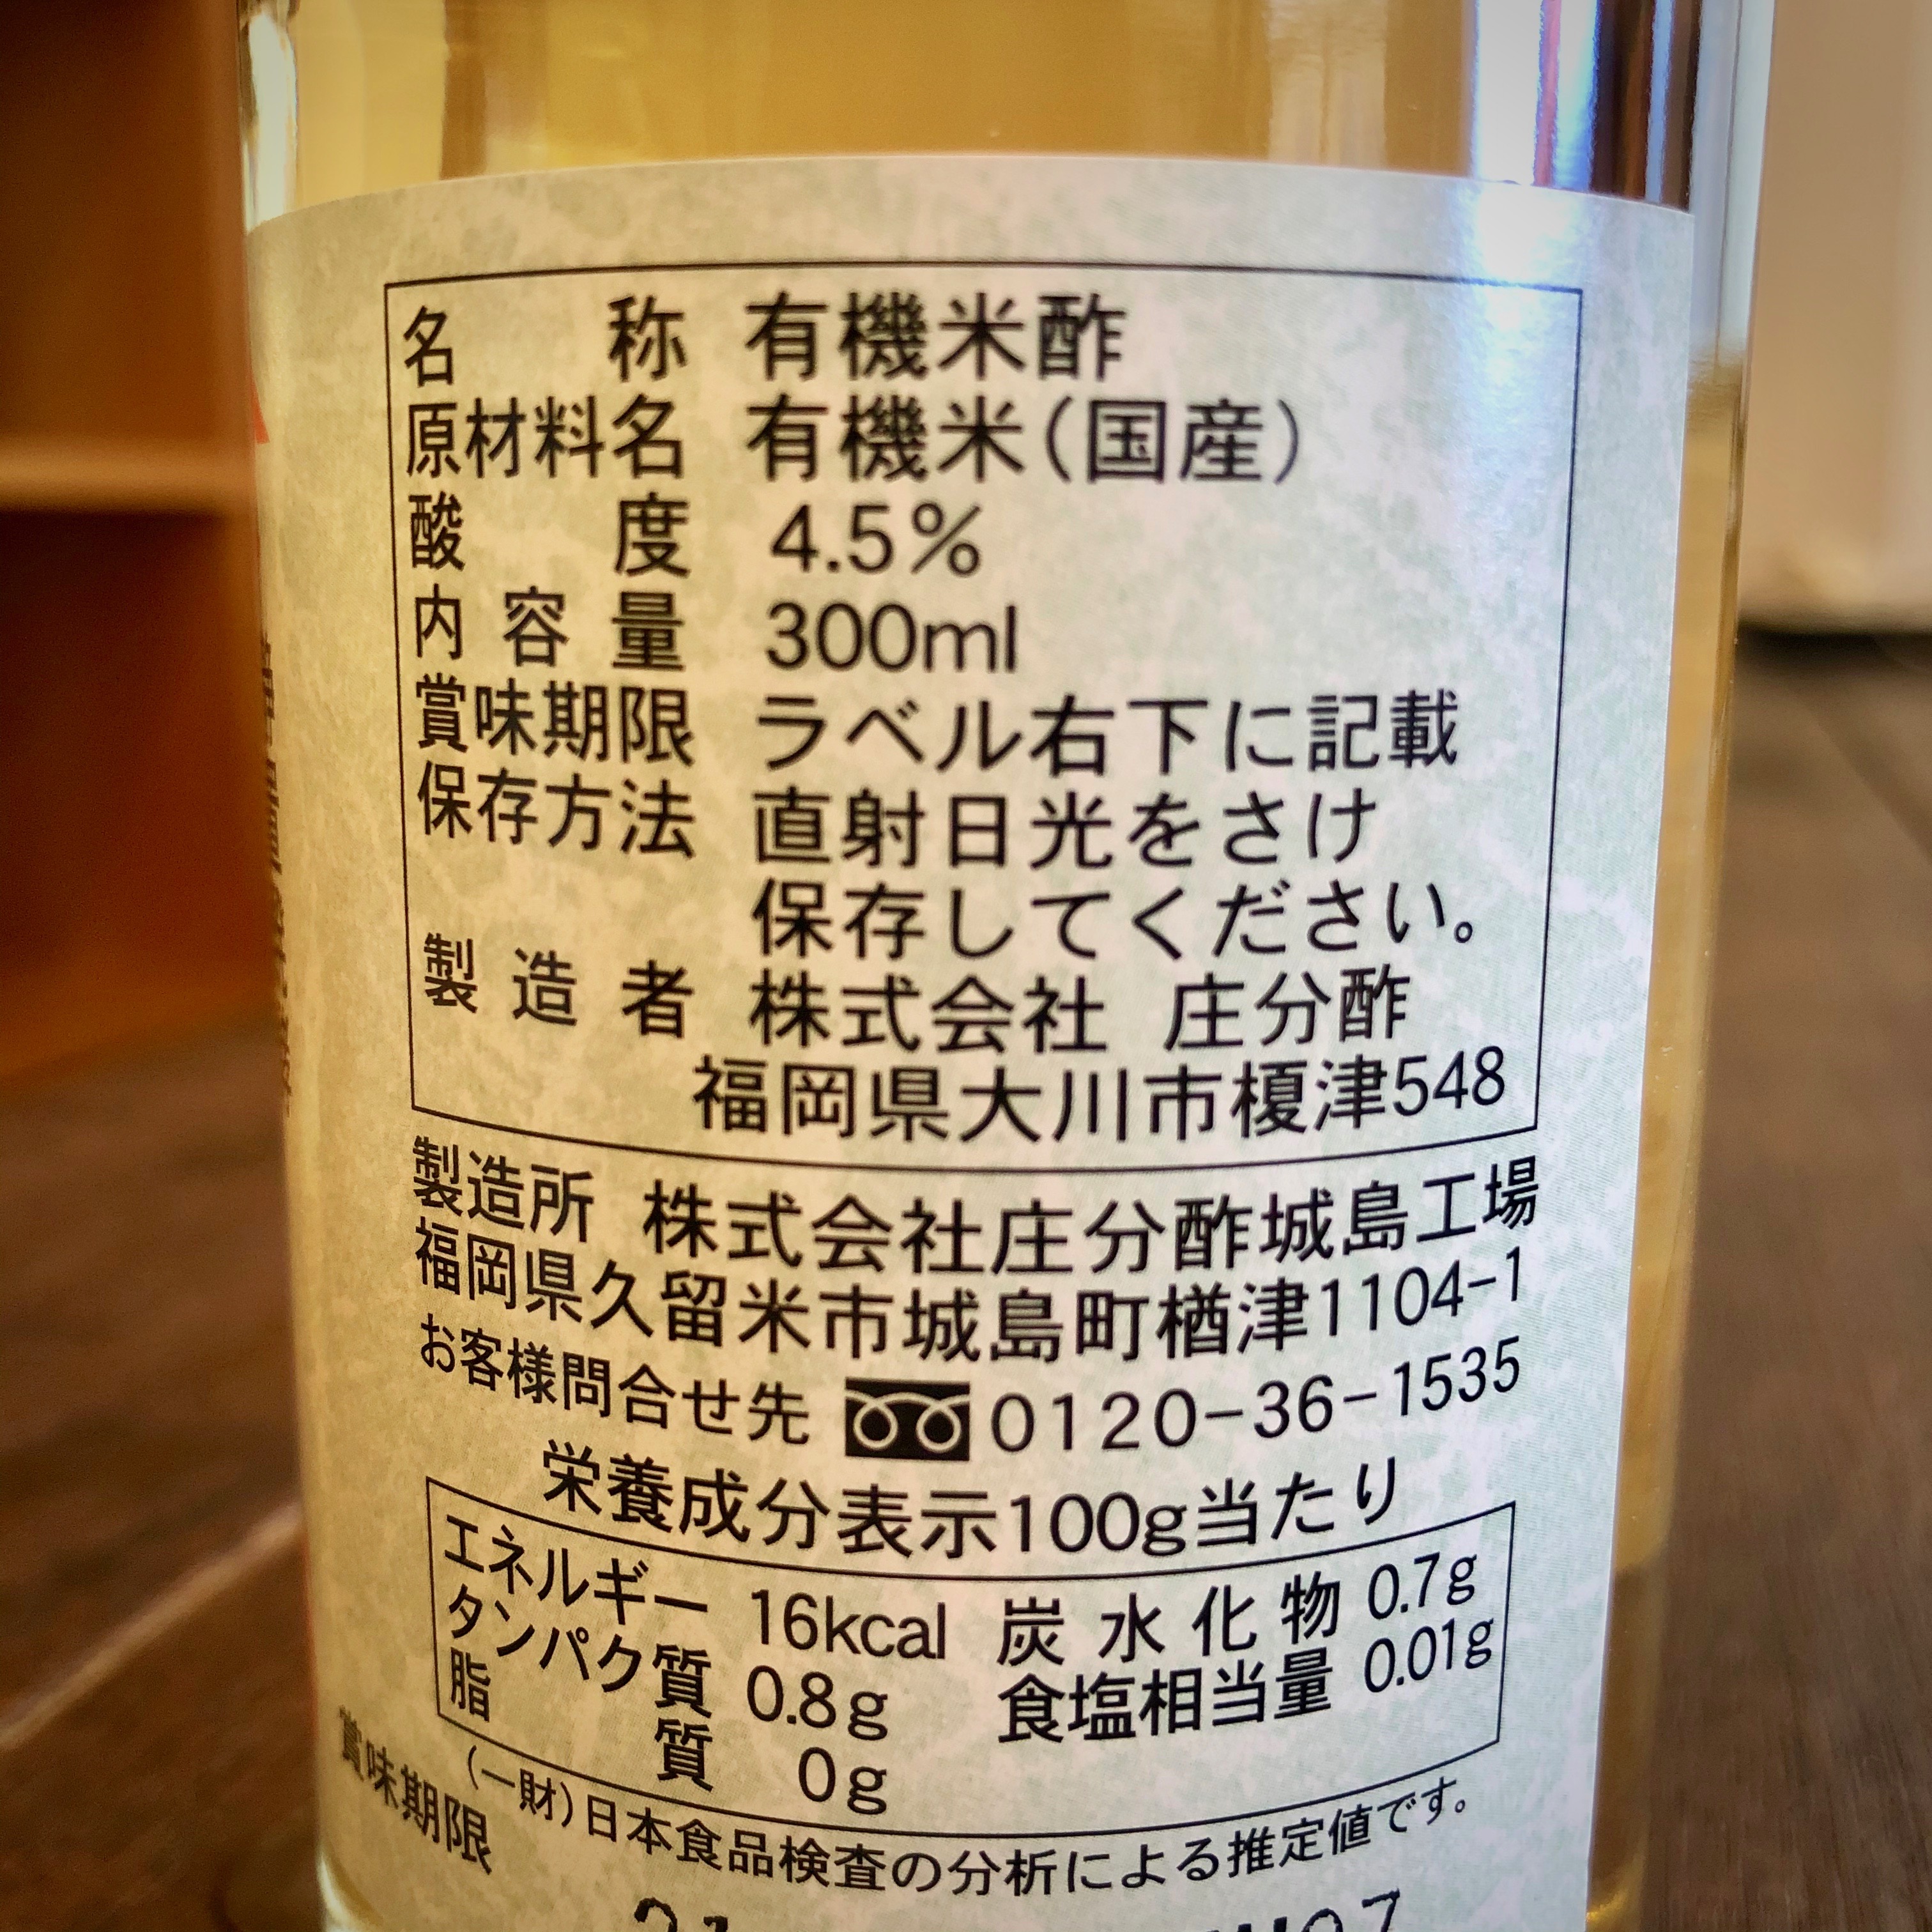 カネヨシの発酵グラナリィ / 庄分有機酢